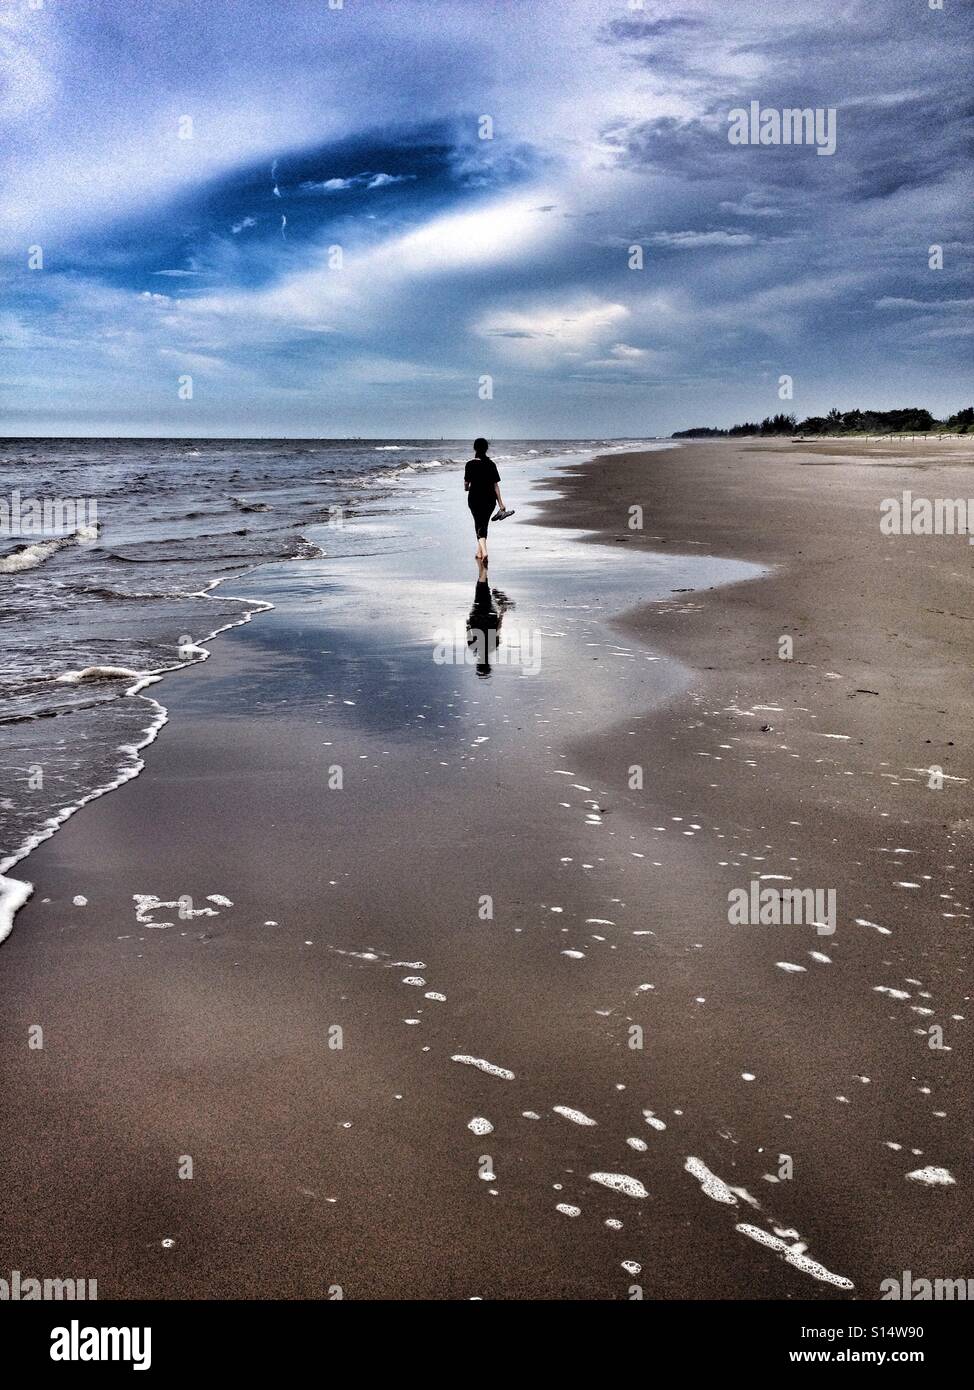 Lone straniero passeggiate lungo le sabbie della spiaggia a piedi nudi, tenendo sandali in mano, come la sabbia bagnata riflette la sua figura Foto Stock